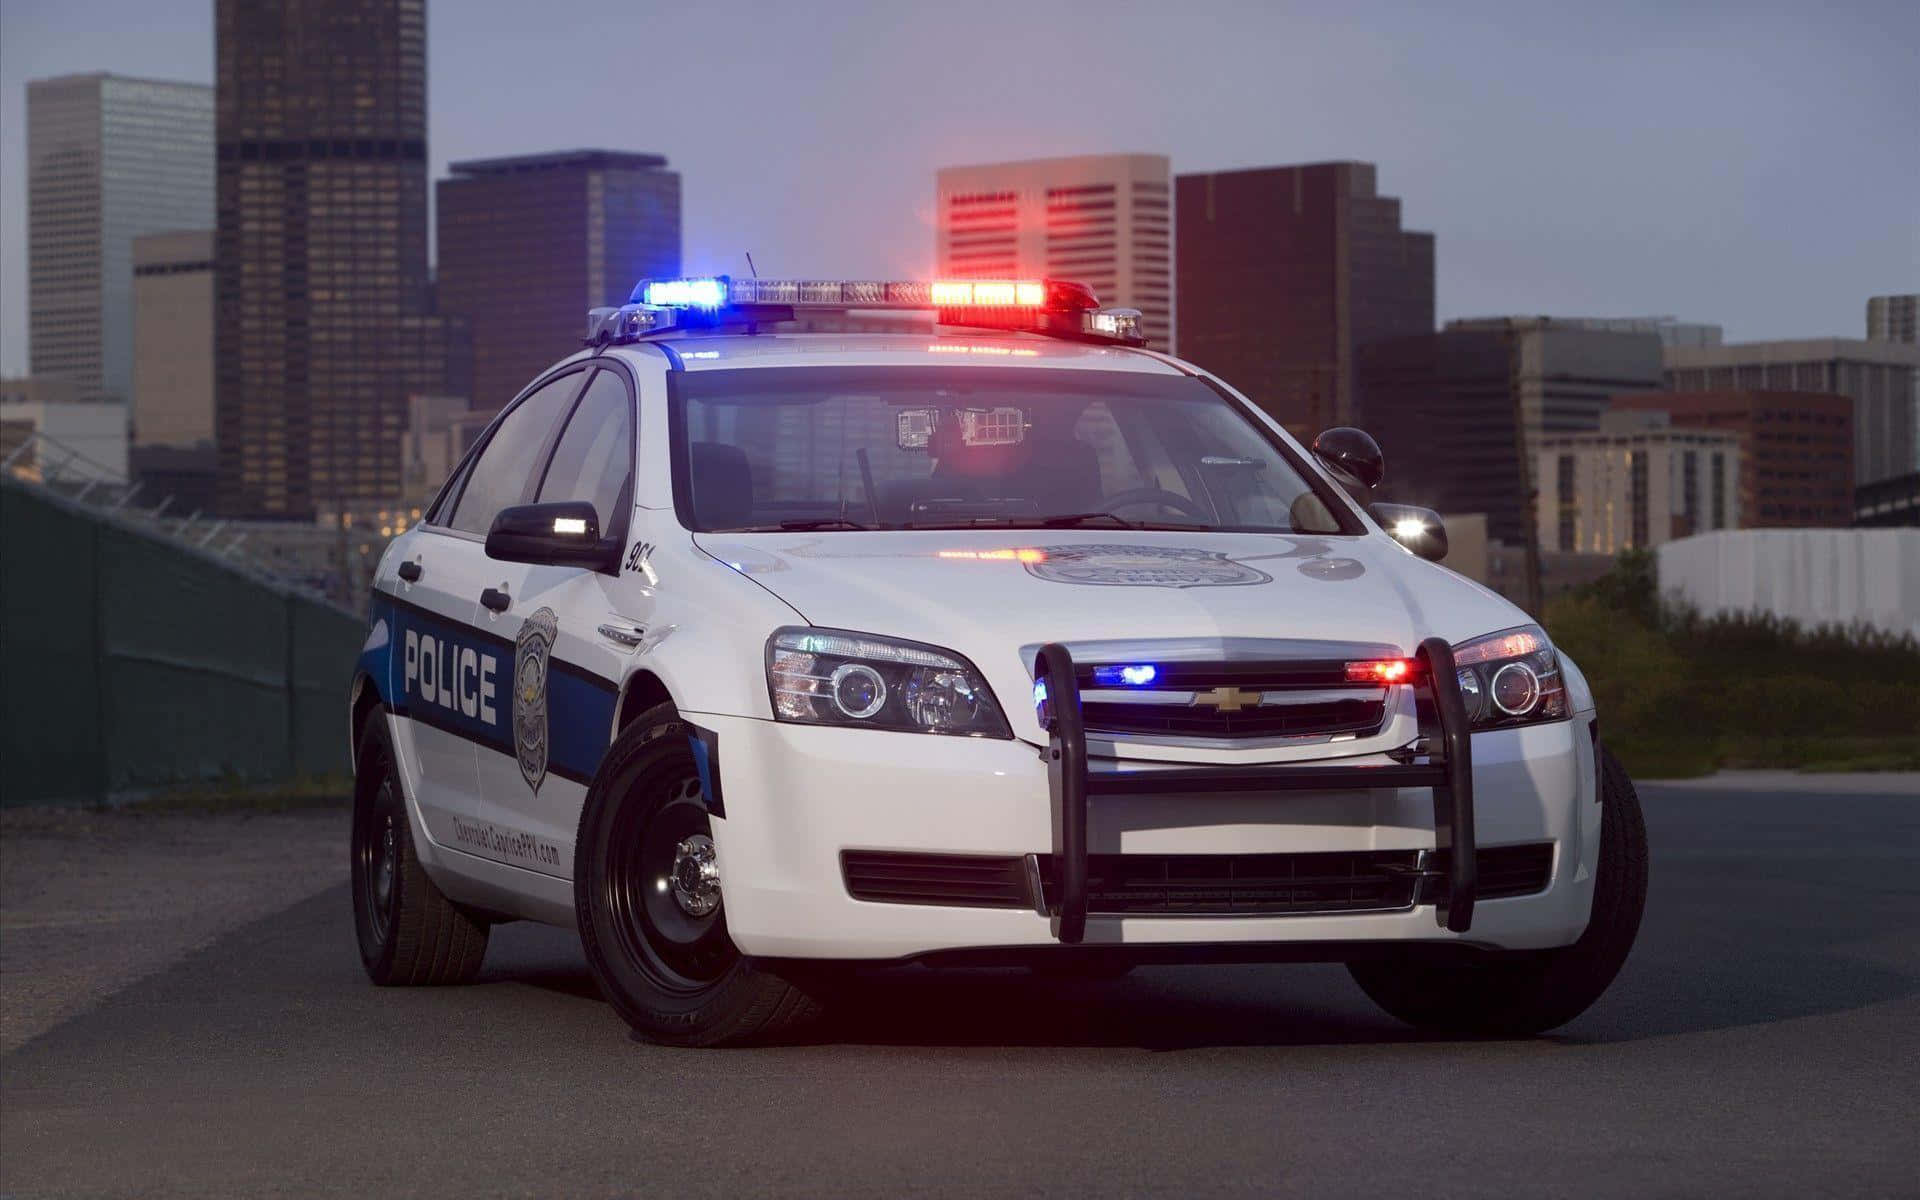 A modern police car on patrol